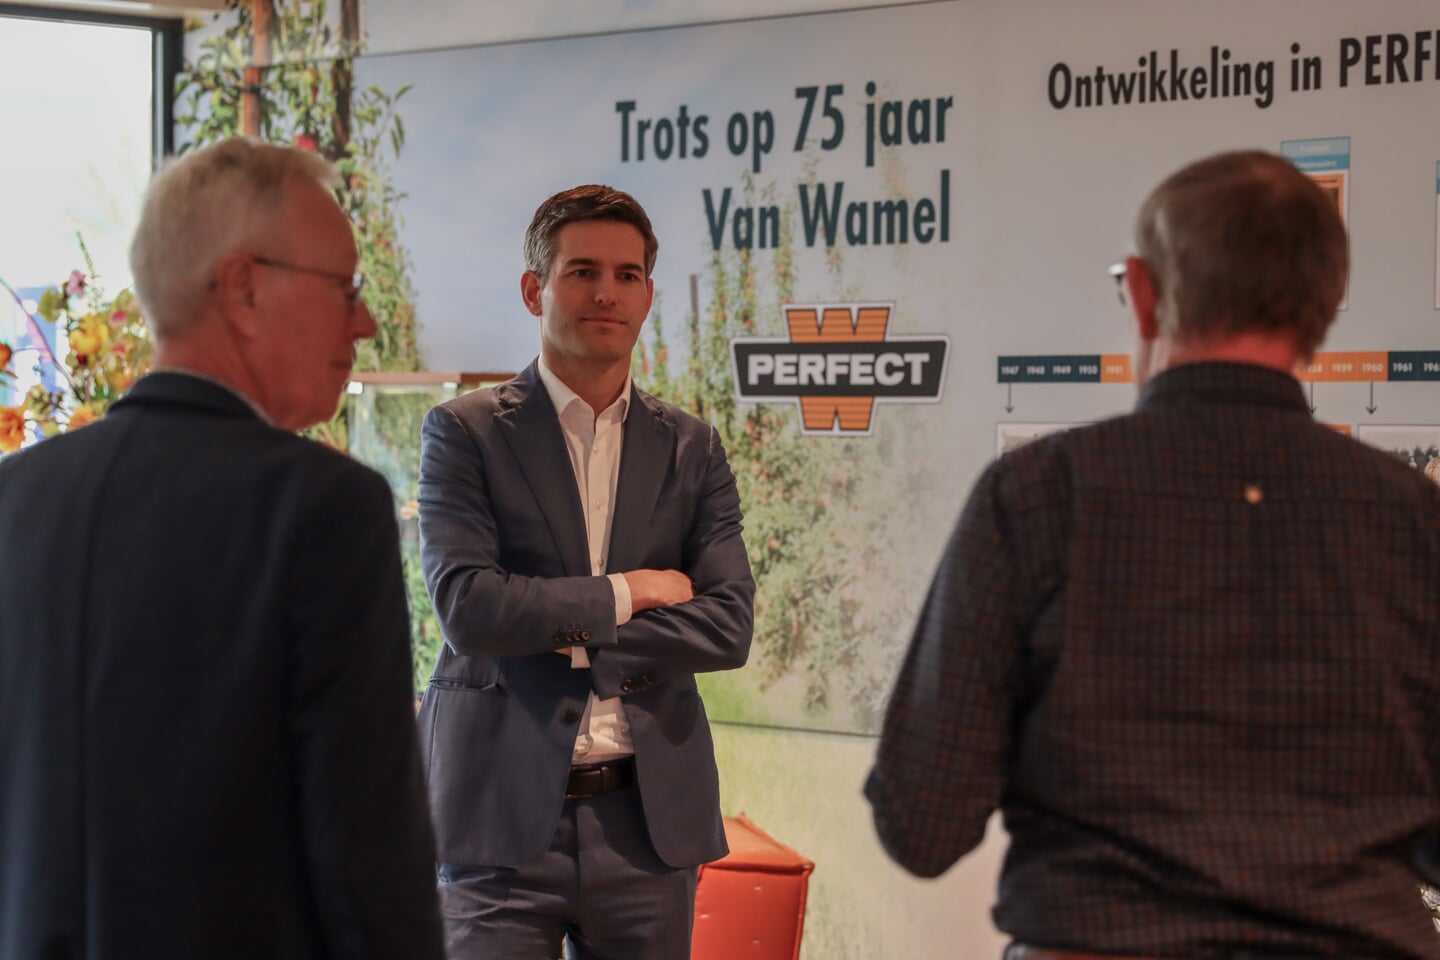 Europarlementariër Tom Berendsen op bezoek bij Perfect van Wamel in Beneden-Leeuwen